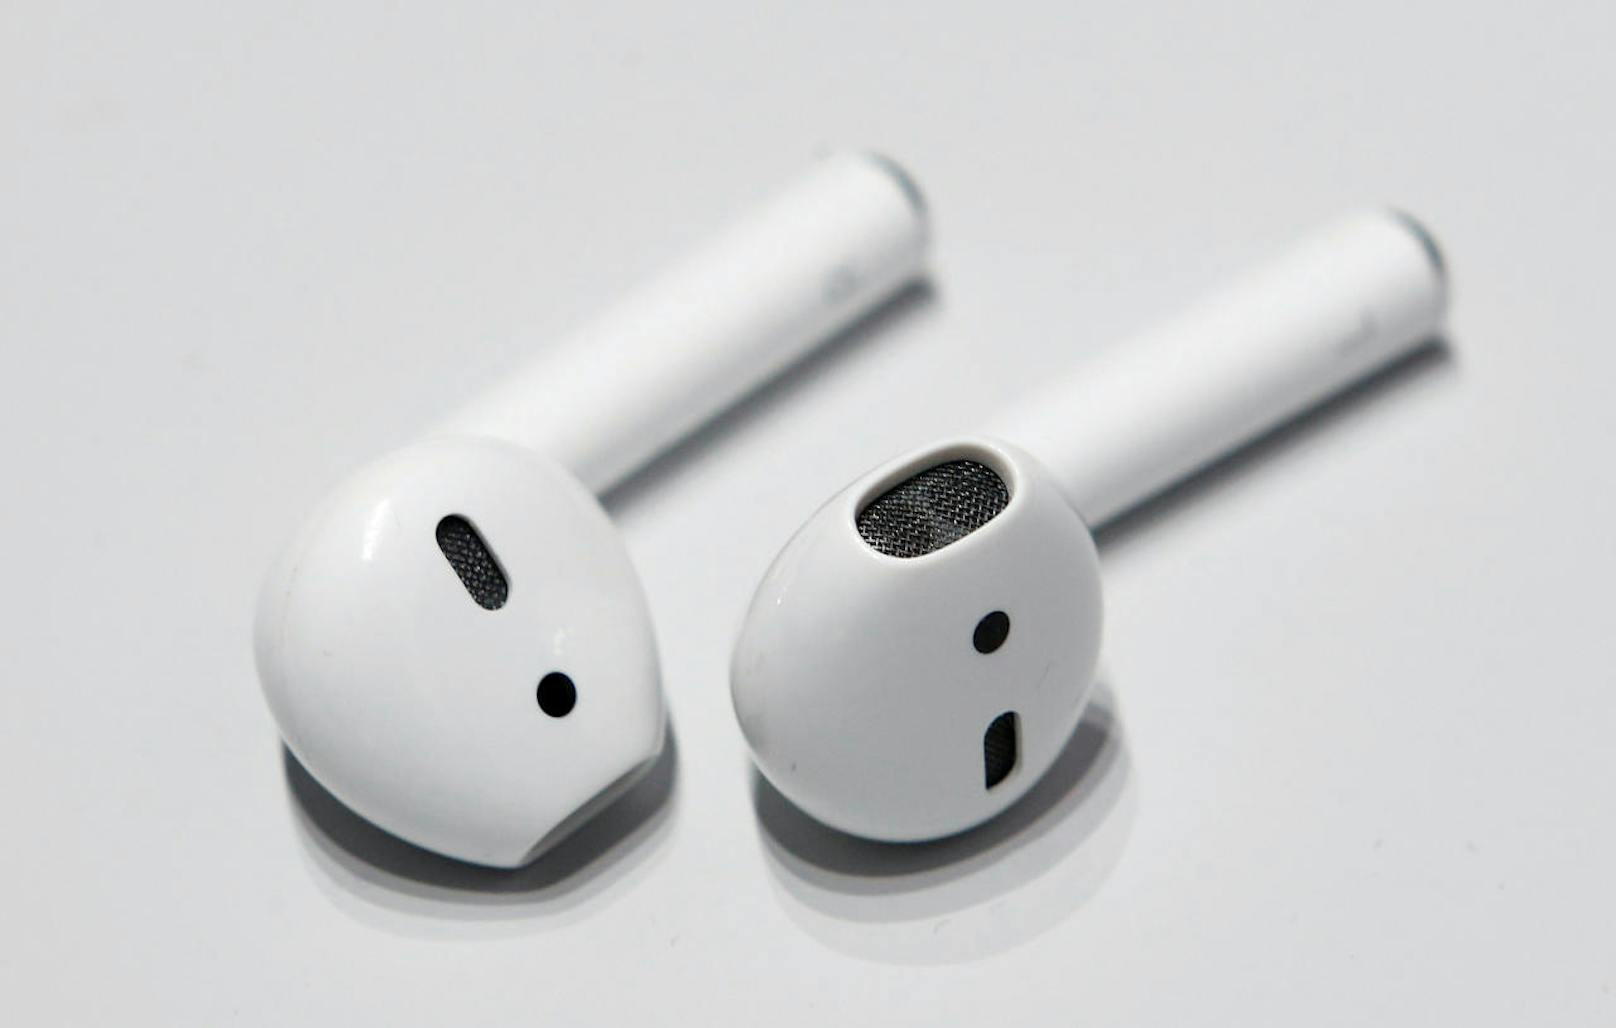 Die kabellosen Airpod-Kopfhörer verkaufen sich gut. Nun könnte Apple bereits an einem weiteren Modell arbeiten, wie Bloomberg.com berichtet. Der iPhone-Hersteller wolle spätestens bis Ende 2018 Over-Ear-Kopfhörer mit Geräuschunterdrückung präsentieren, heißt es in dem Bericht. Mit den Kopfhörern wolle Apple andere Hersteller wie Bose konkurrenzieren.